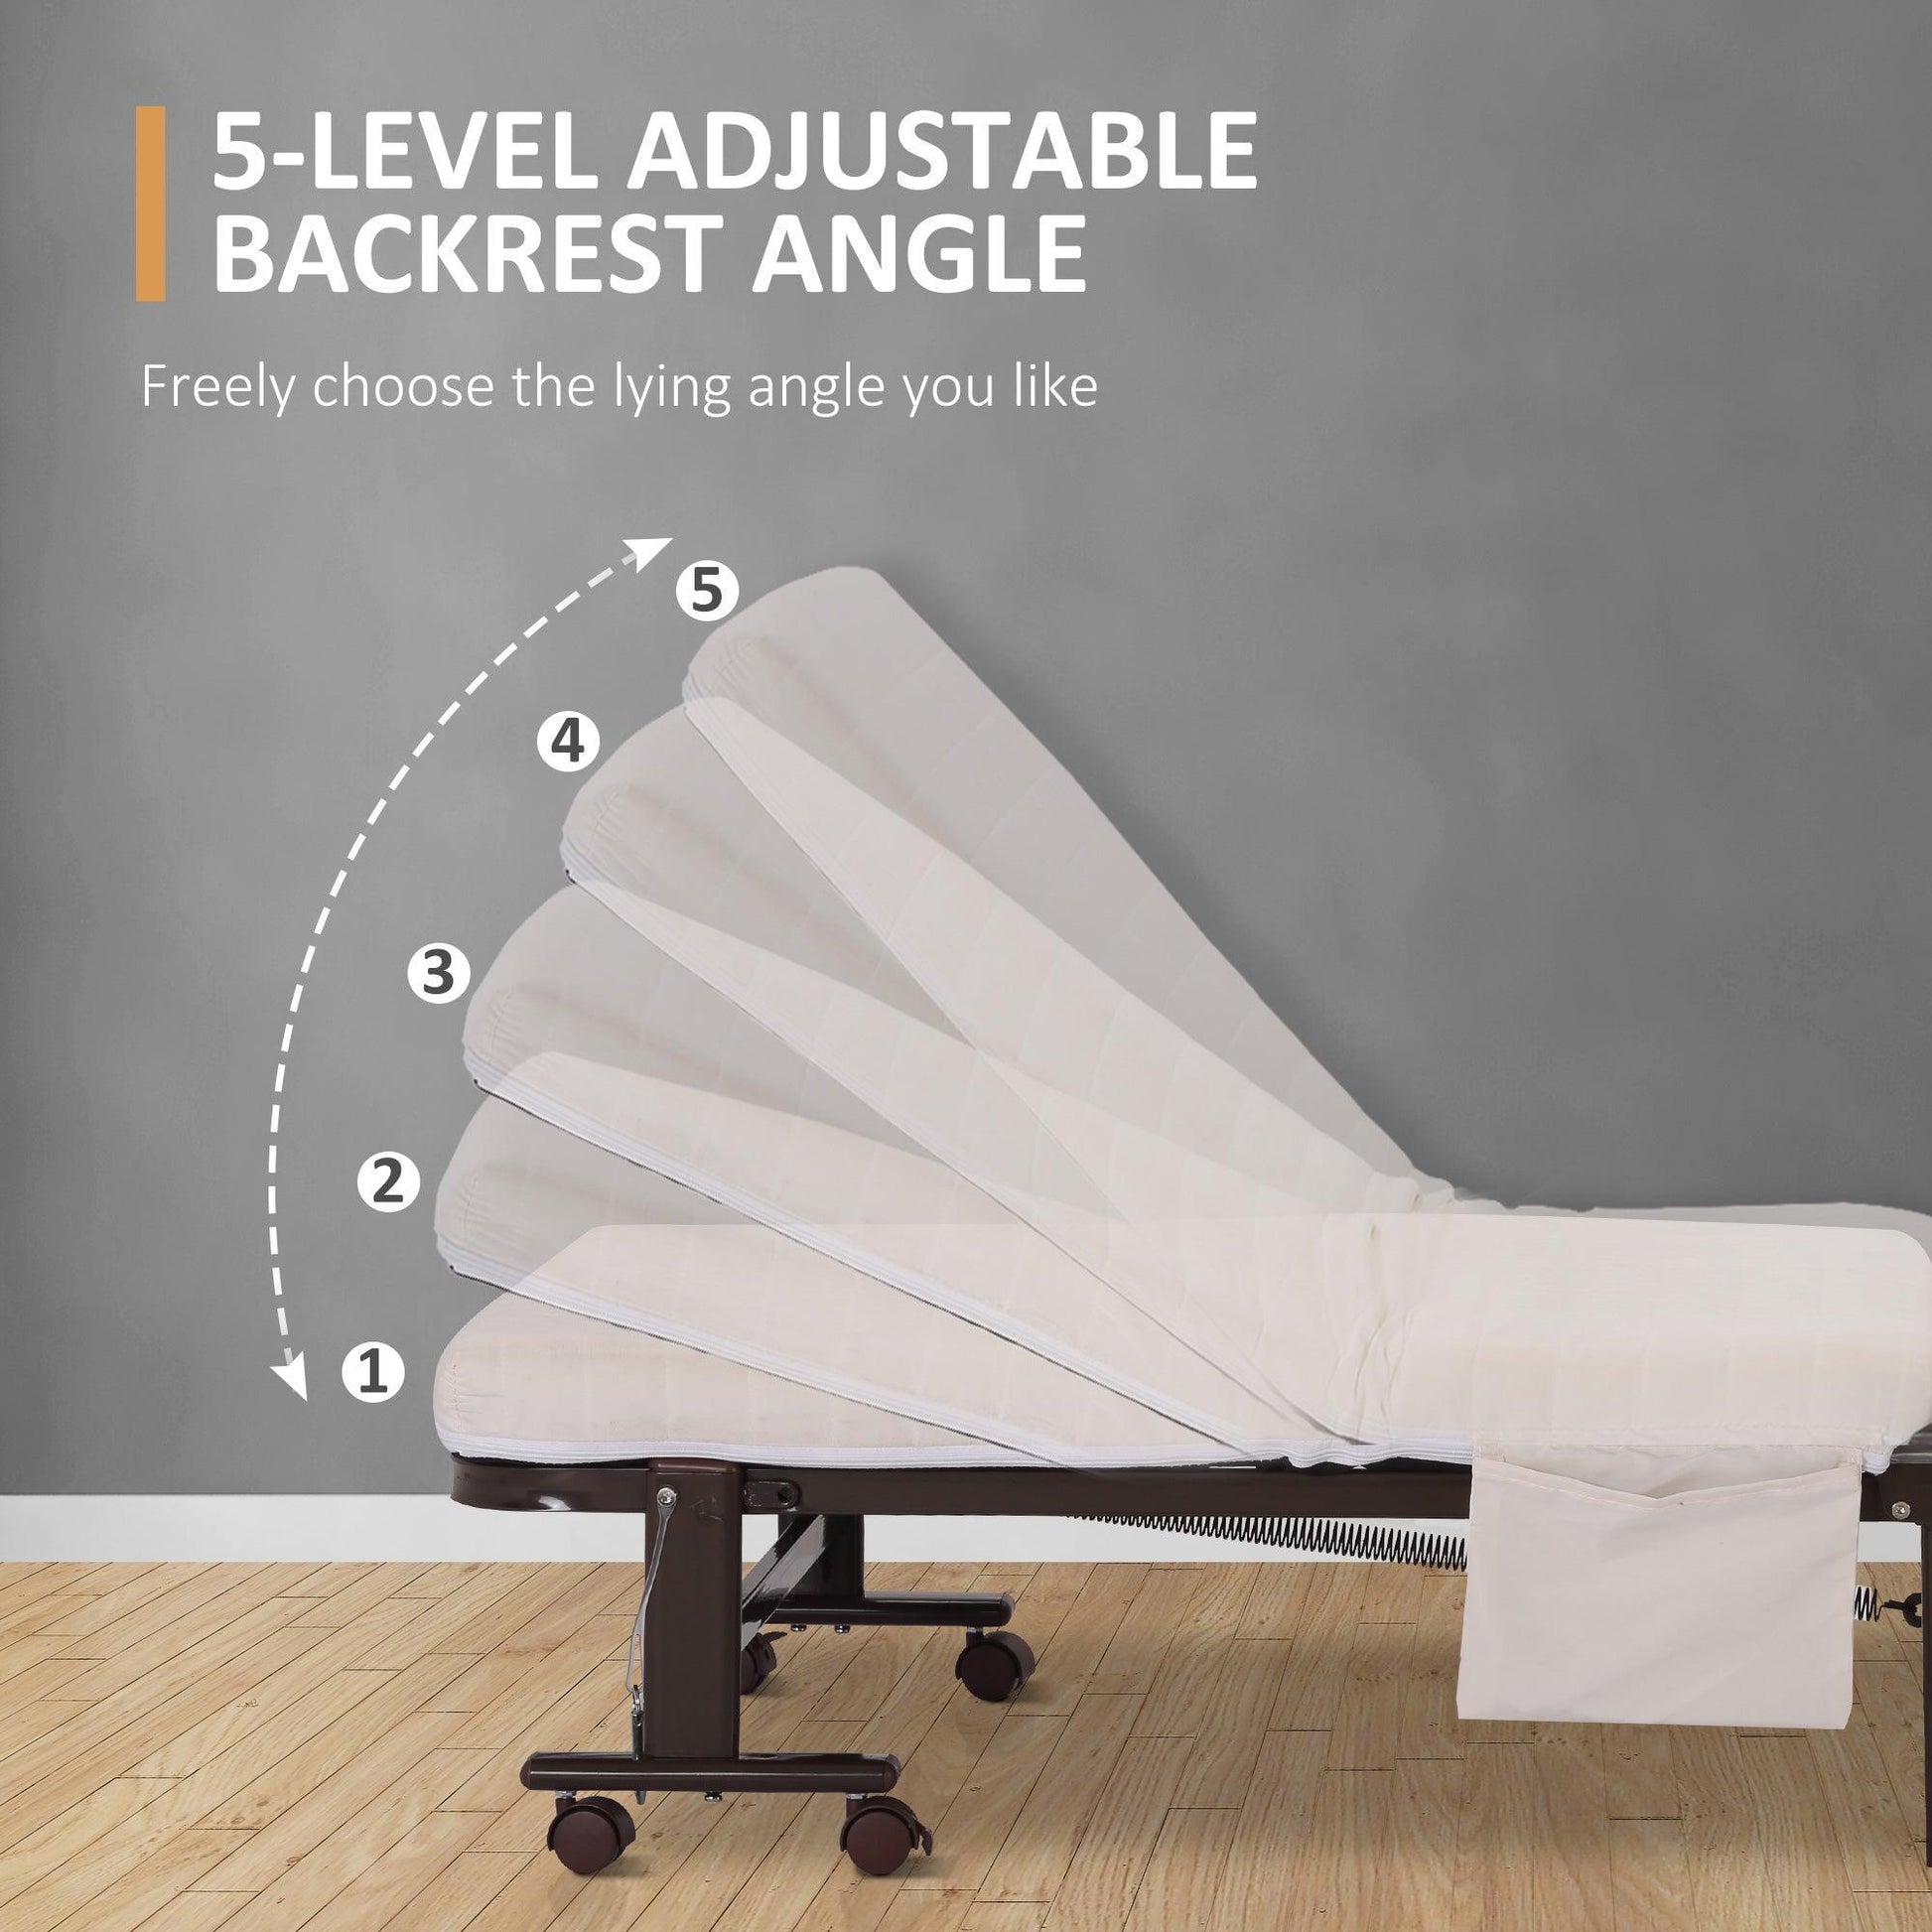 HOMCOM Portable Folding Bed with Adjustable Backrest - ALL4U RETAILER LTD